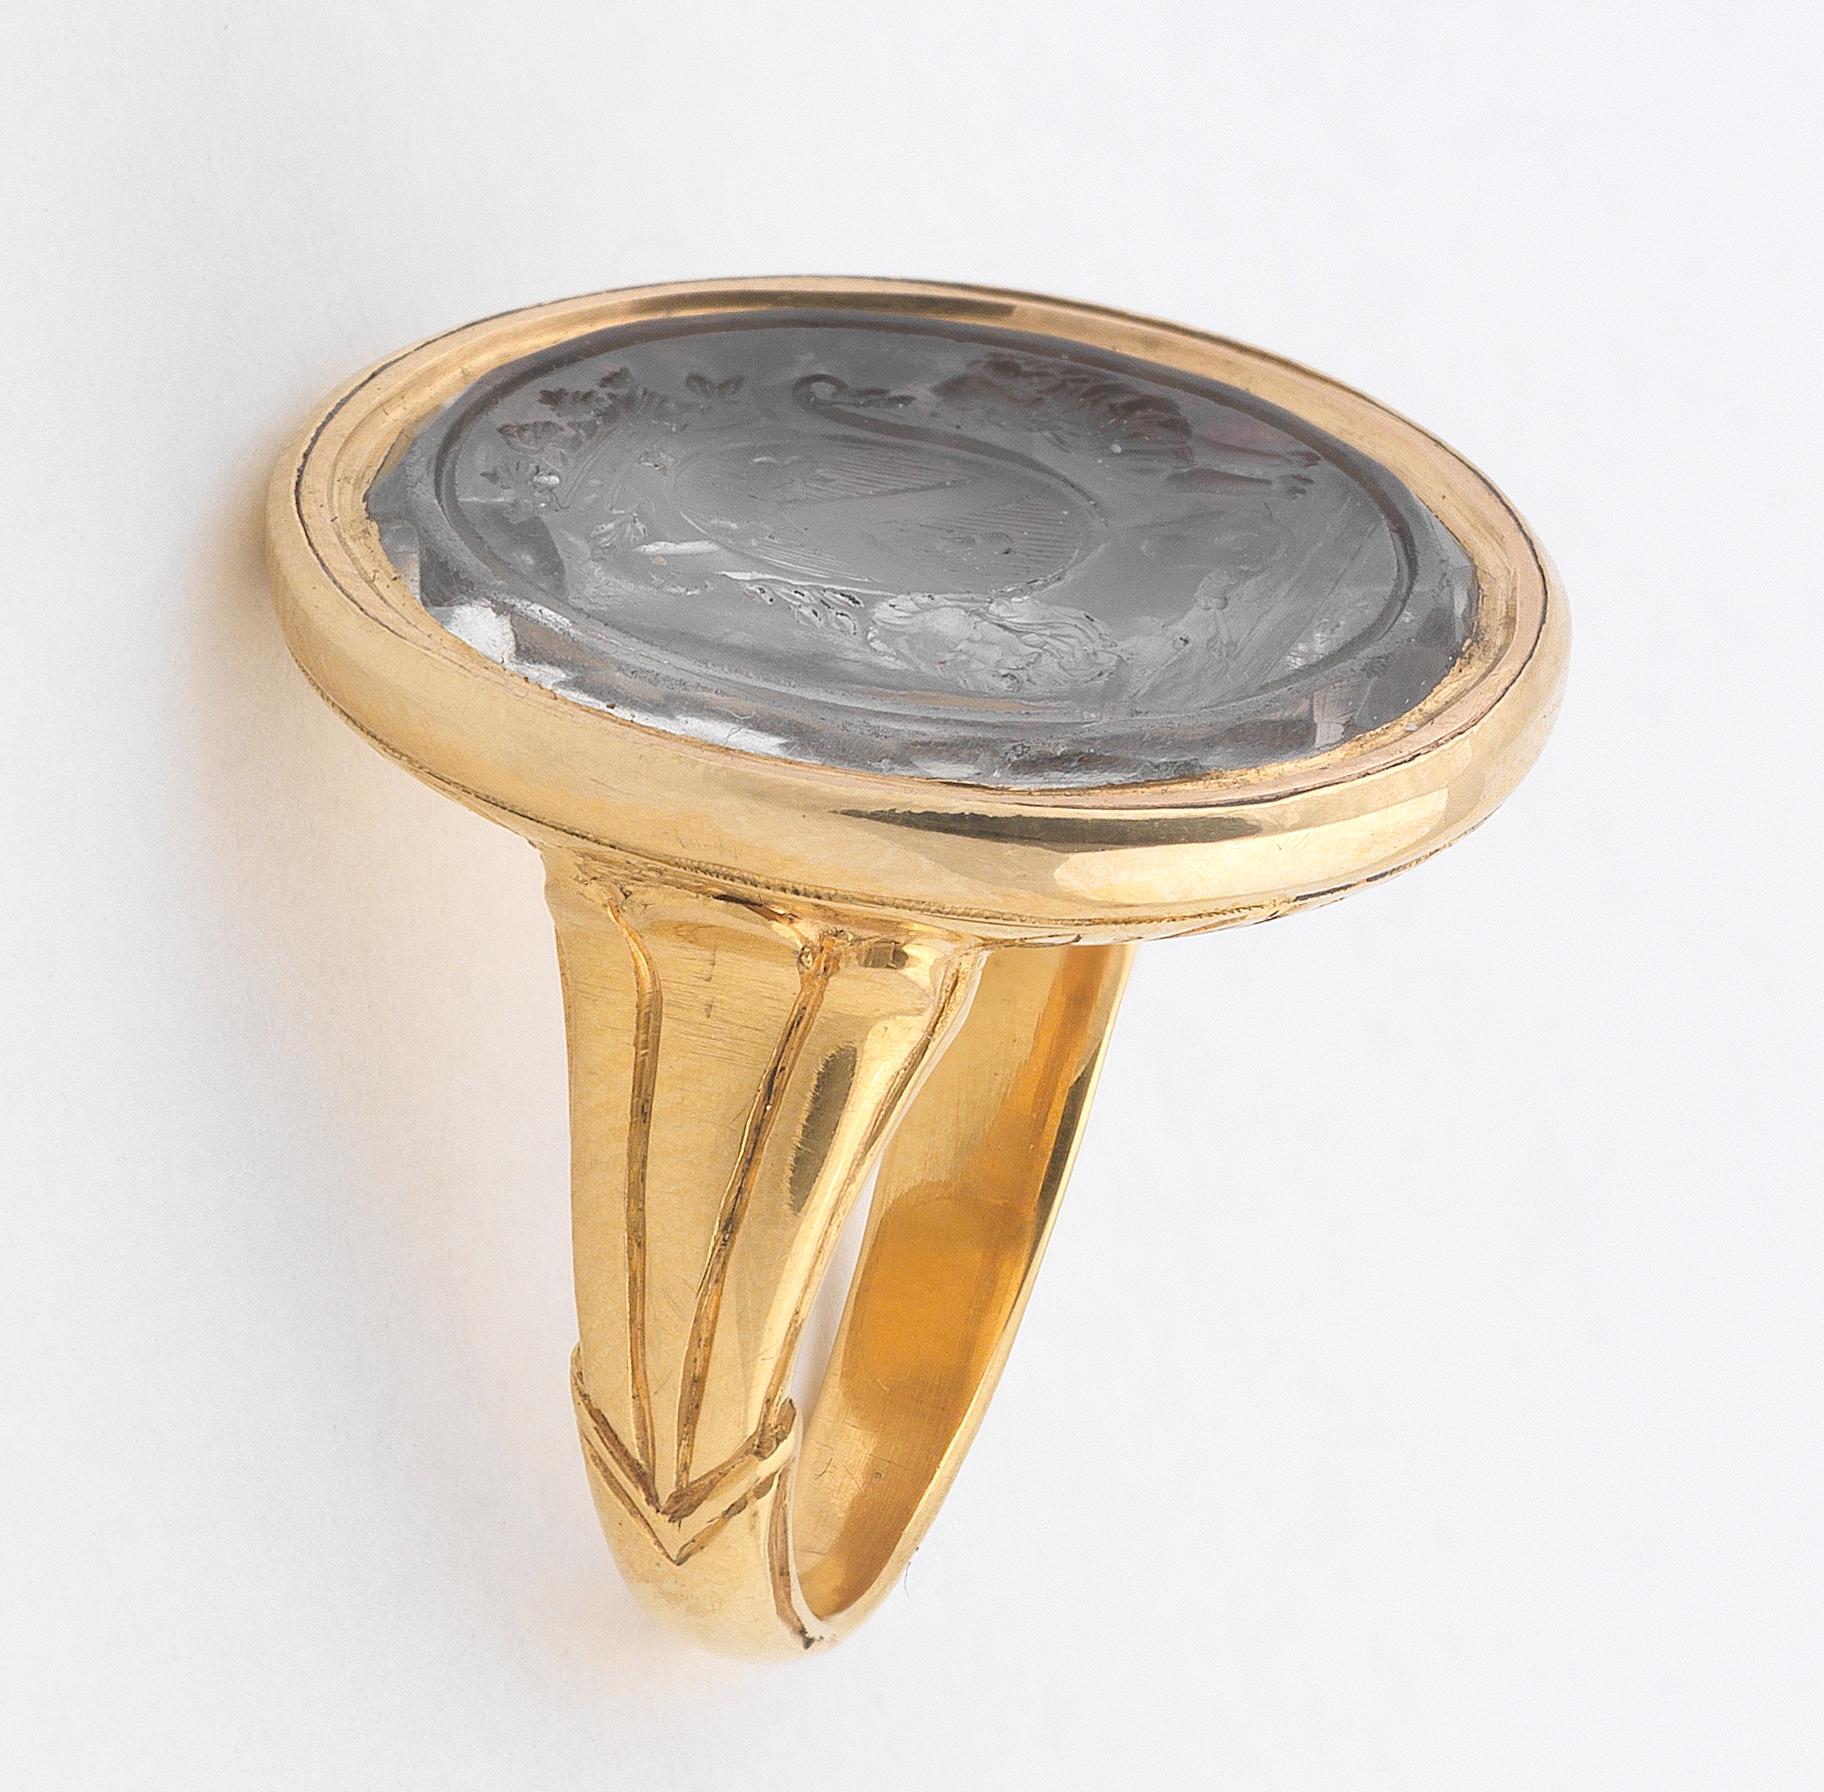 Oval:: mit französischem Wappen:: in einer Goldfassung:: Ringgröße 7:: Länge 25 mm:: Breite 21 mm
Gewicht: 15::7gr.